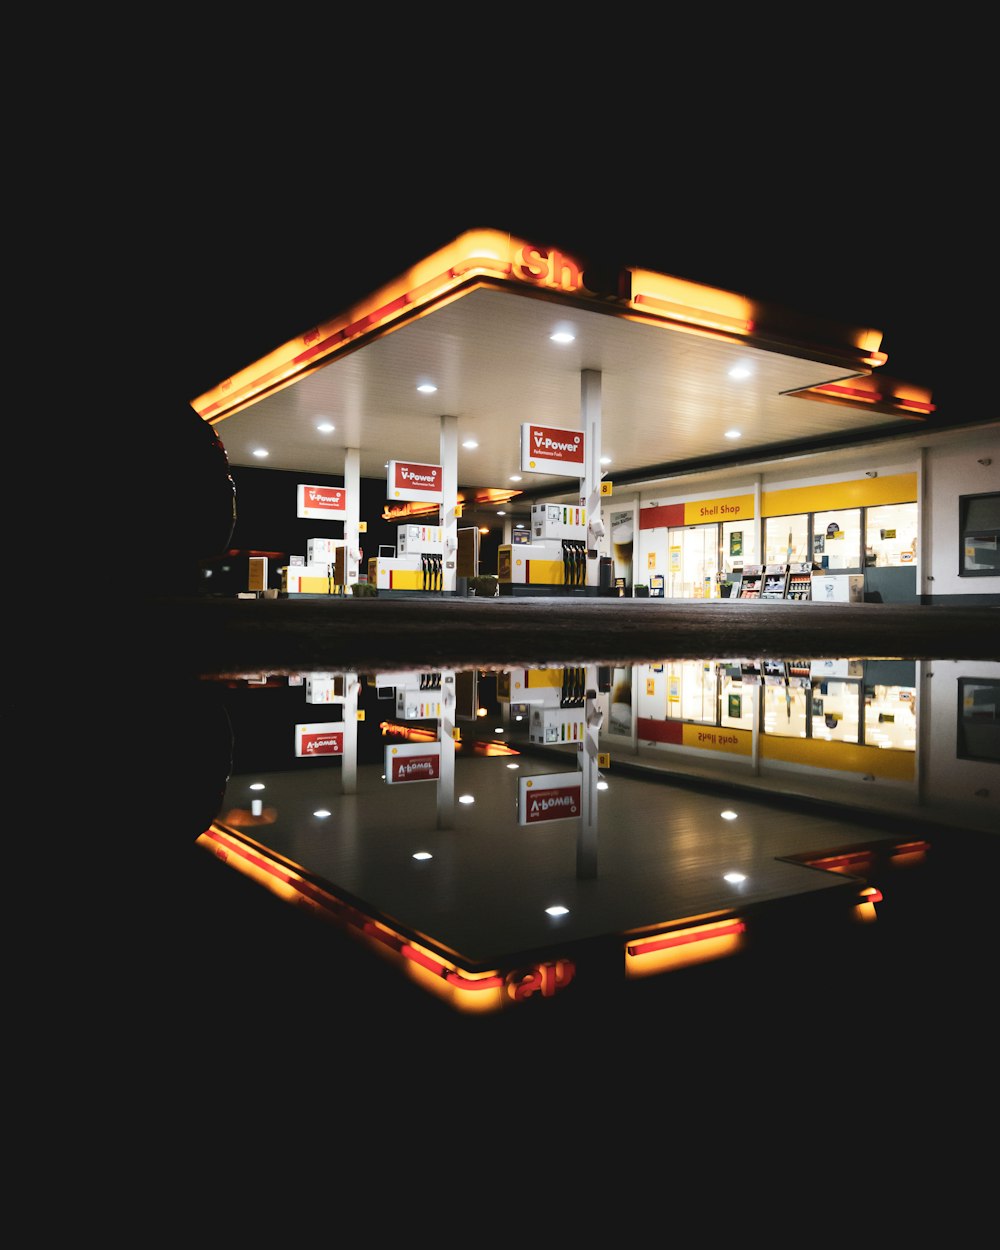 Una gasolinera con un reflejo en el agua